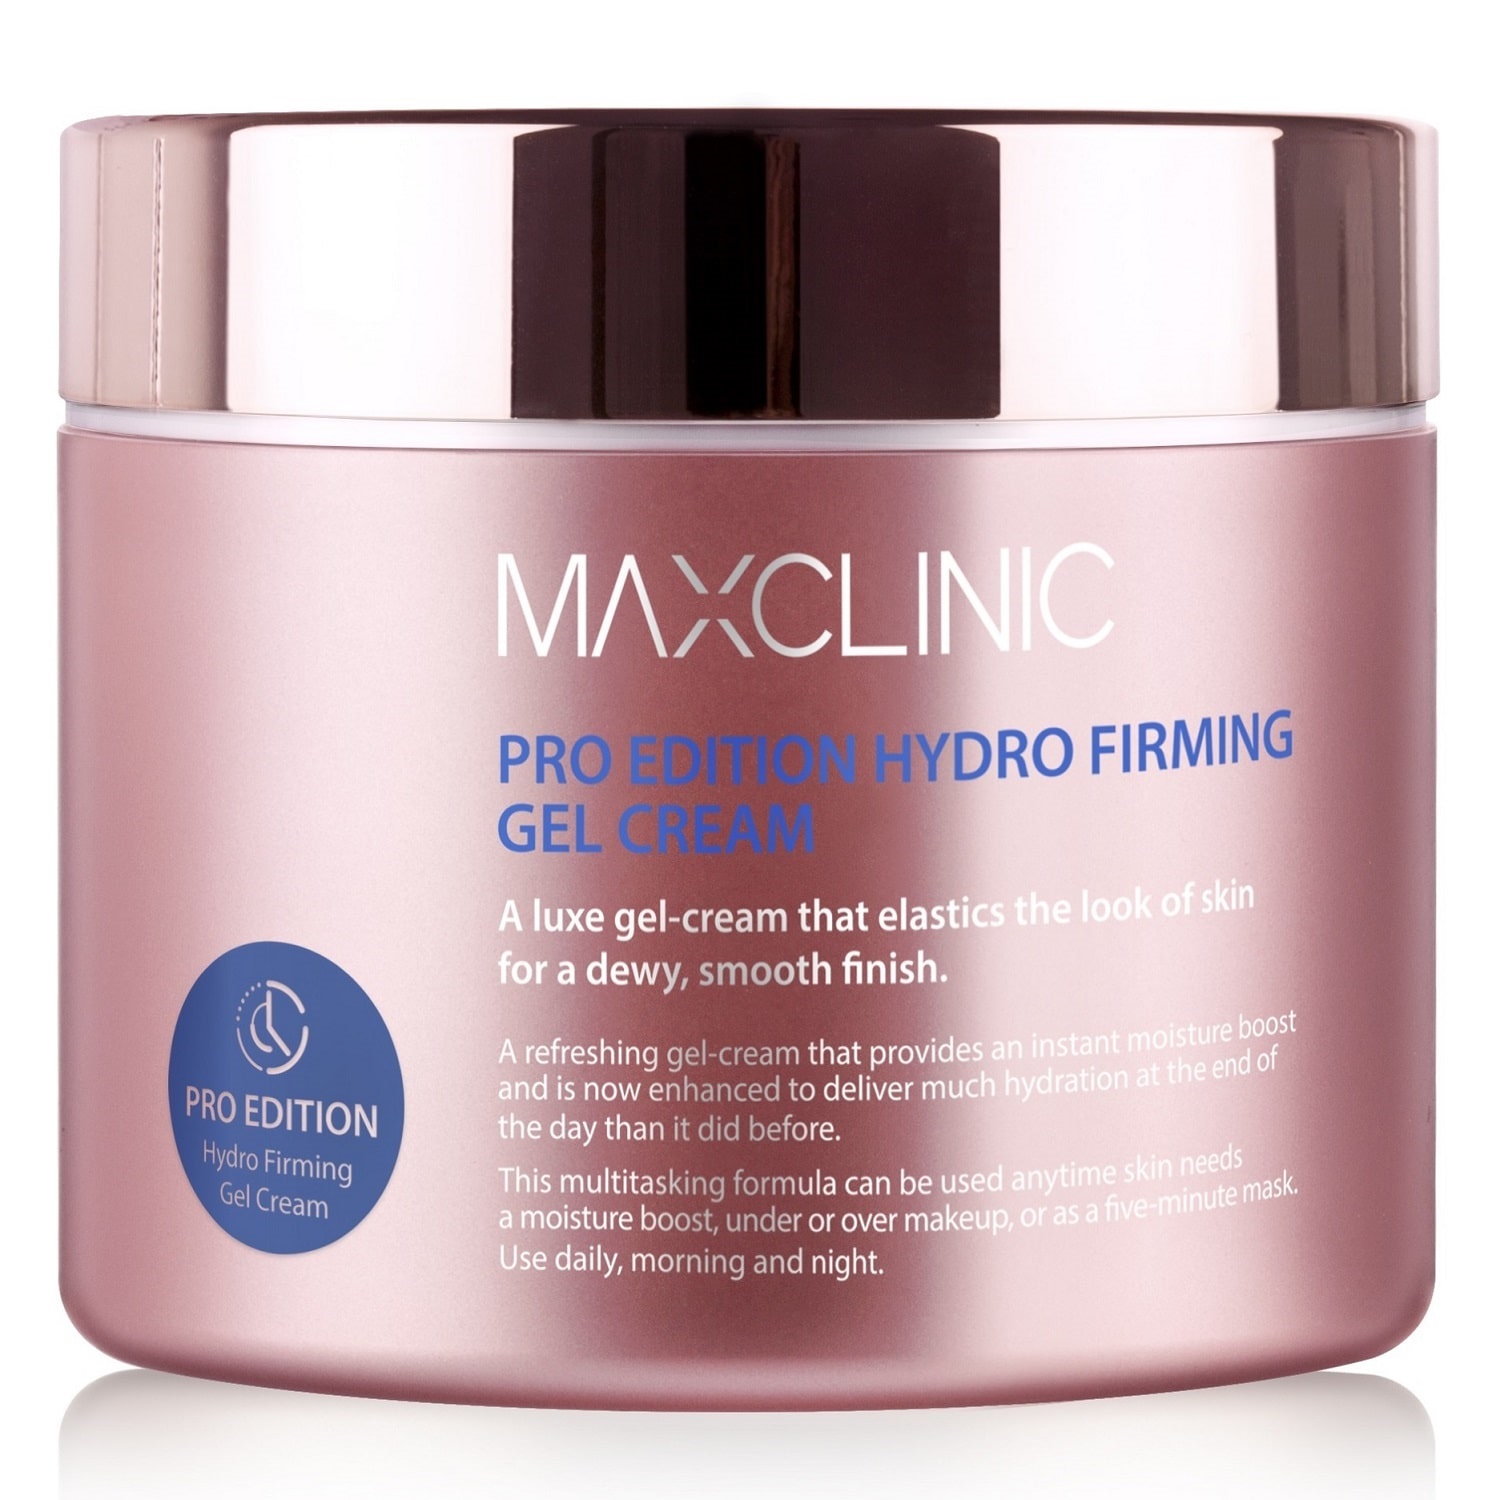 Укрепляющий крем-гель для эластичности и увлажнения кожи Pro-Edition Hydro Firming Gel Cream, 200 г